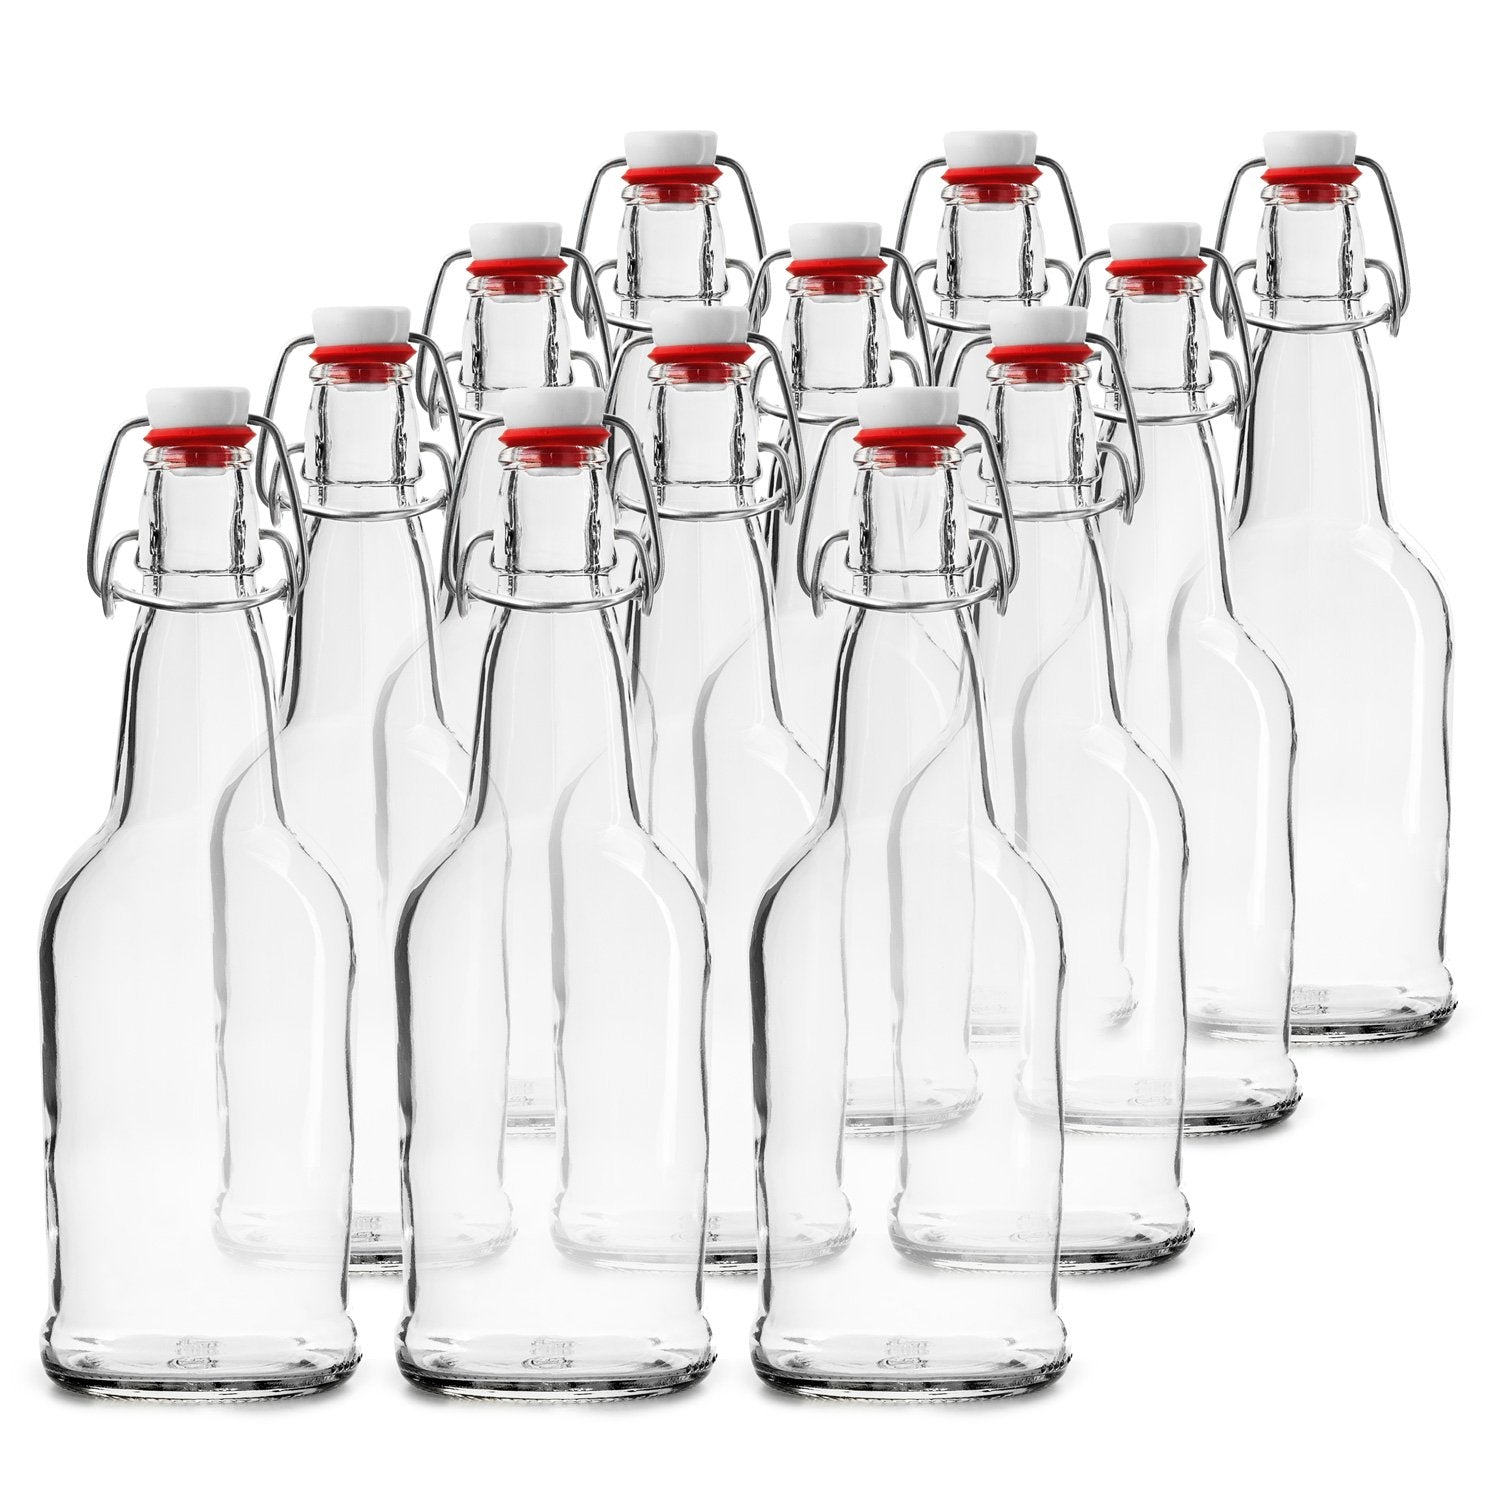 Glass Swing Top Beer Bottles, 1 Litter 32 oz, Flip Top Brewing